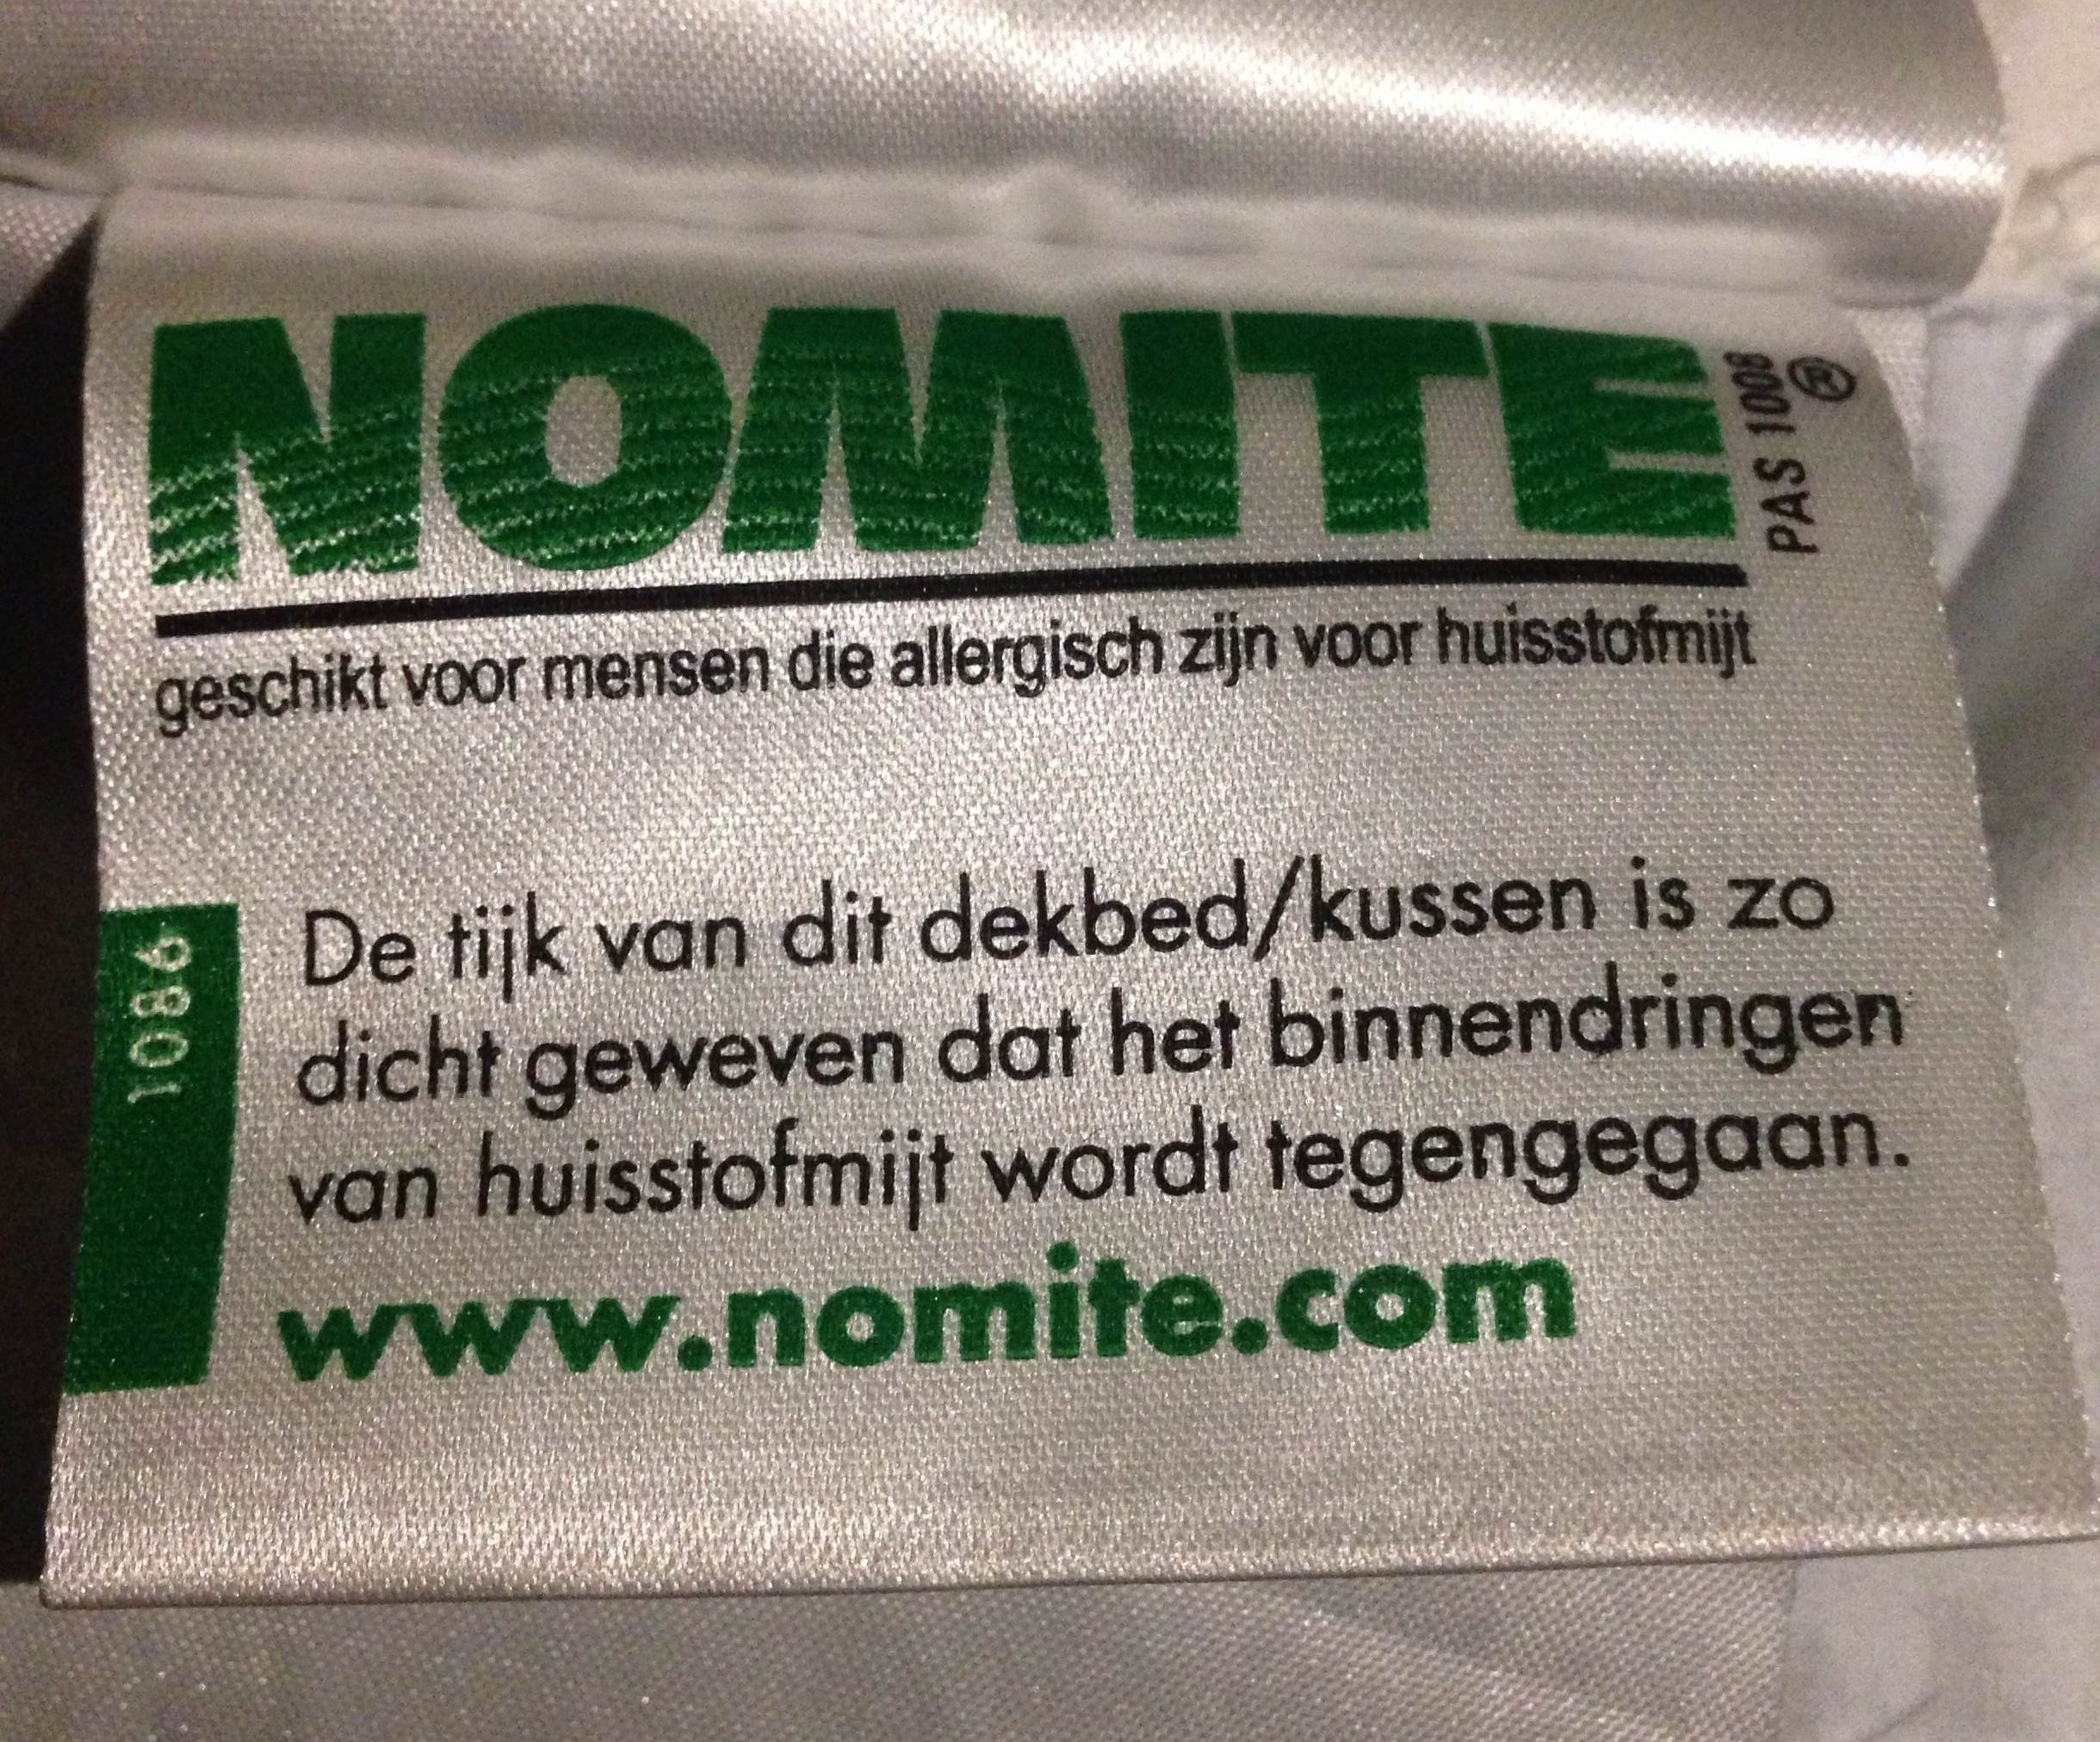 ga werken subtiel Veranderlijk Nomite label - Donskussen.be